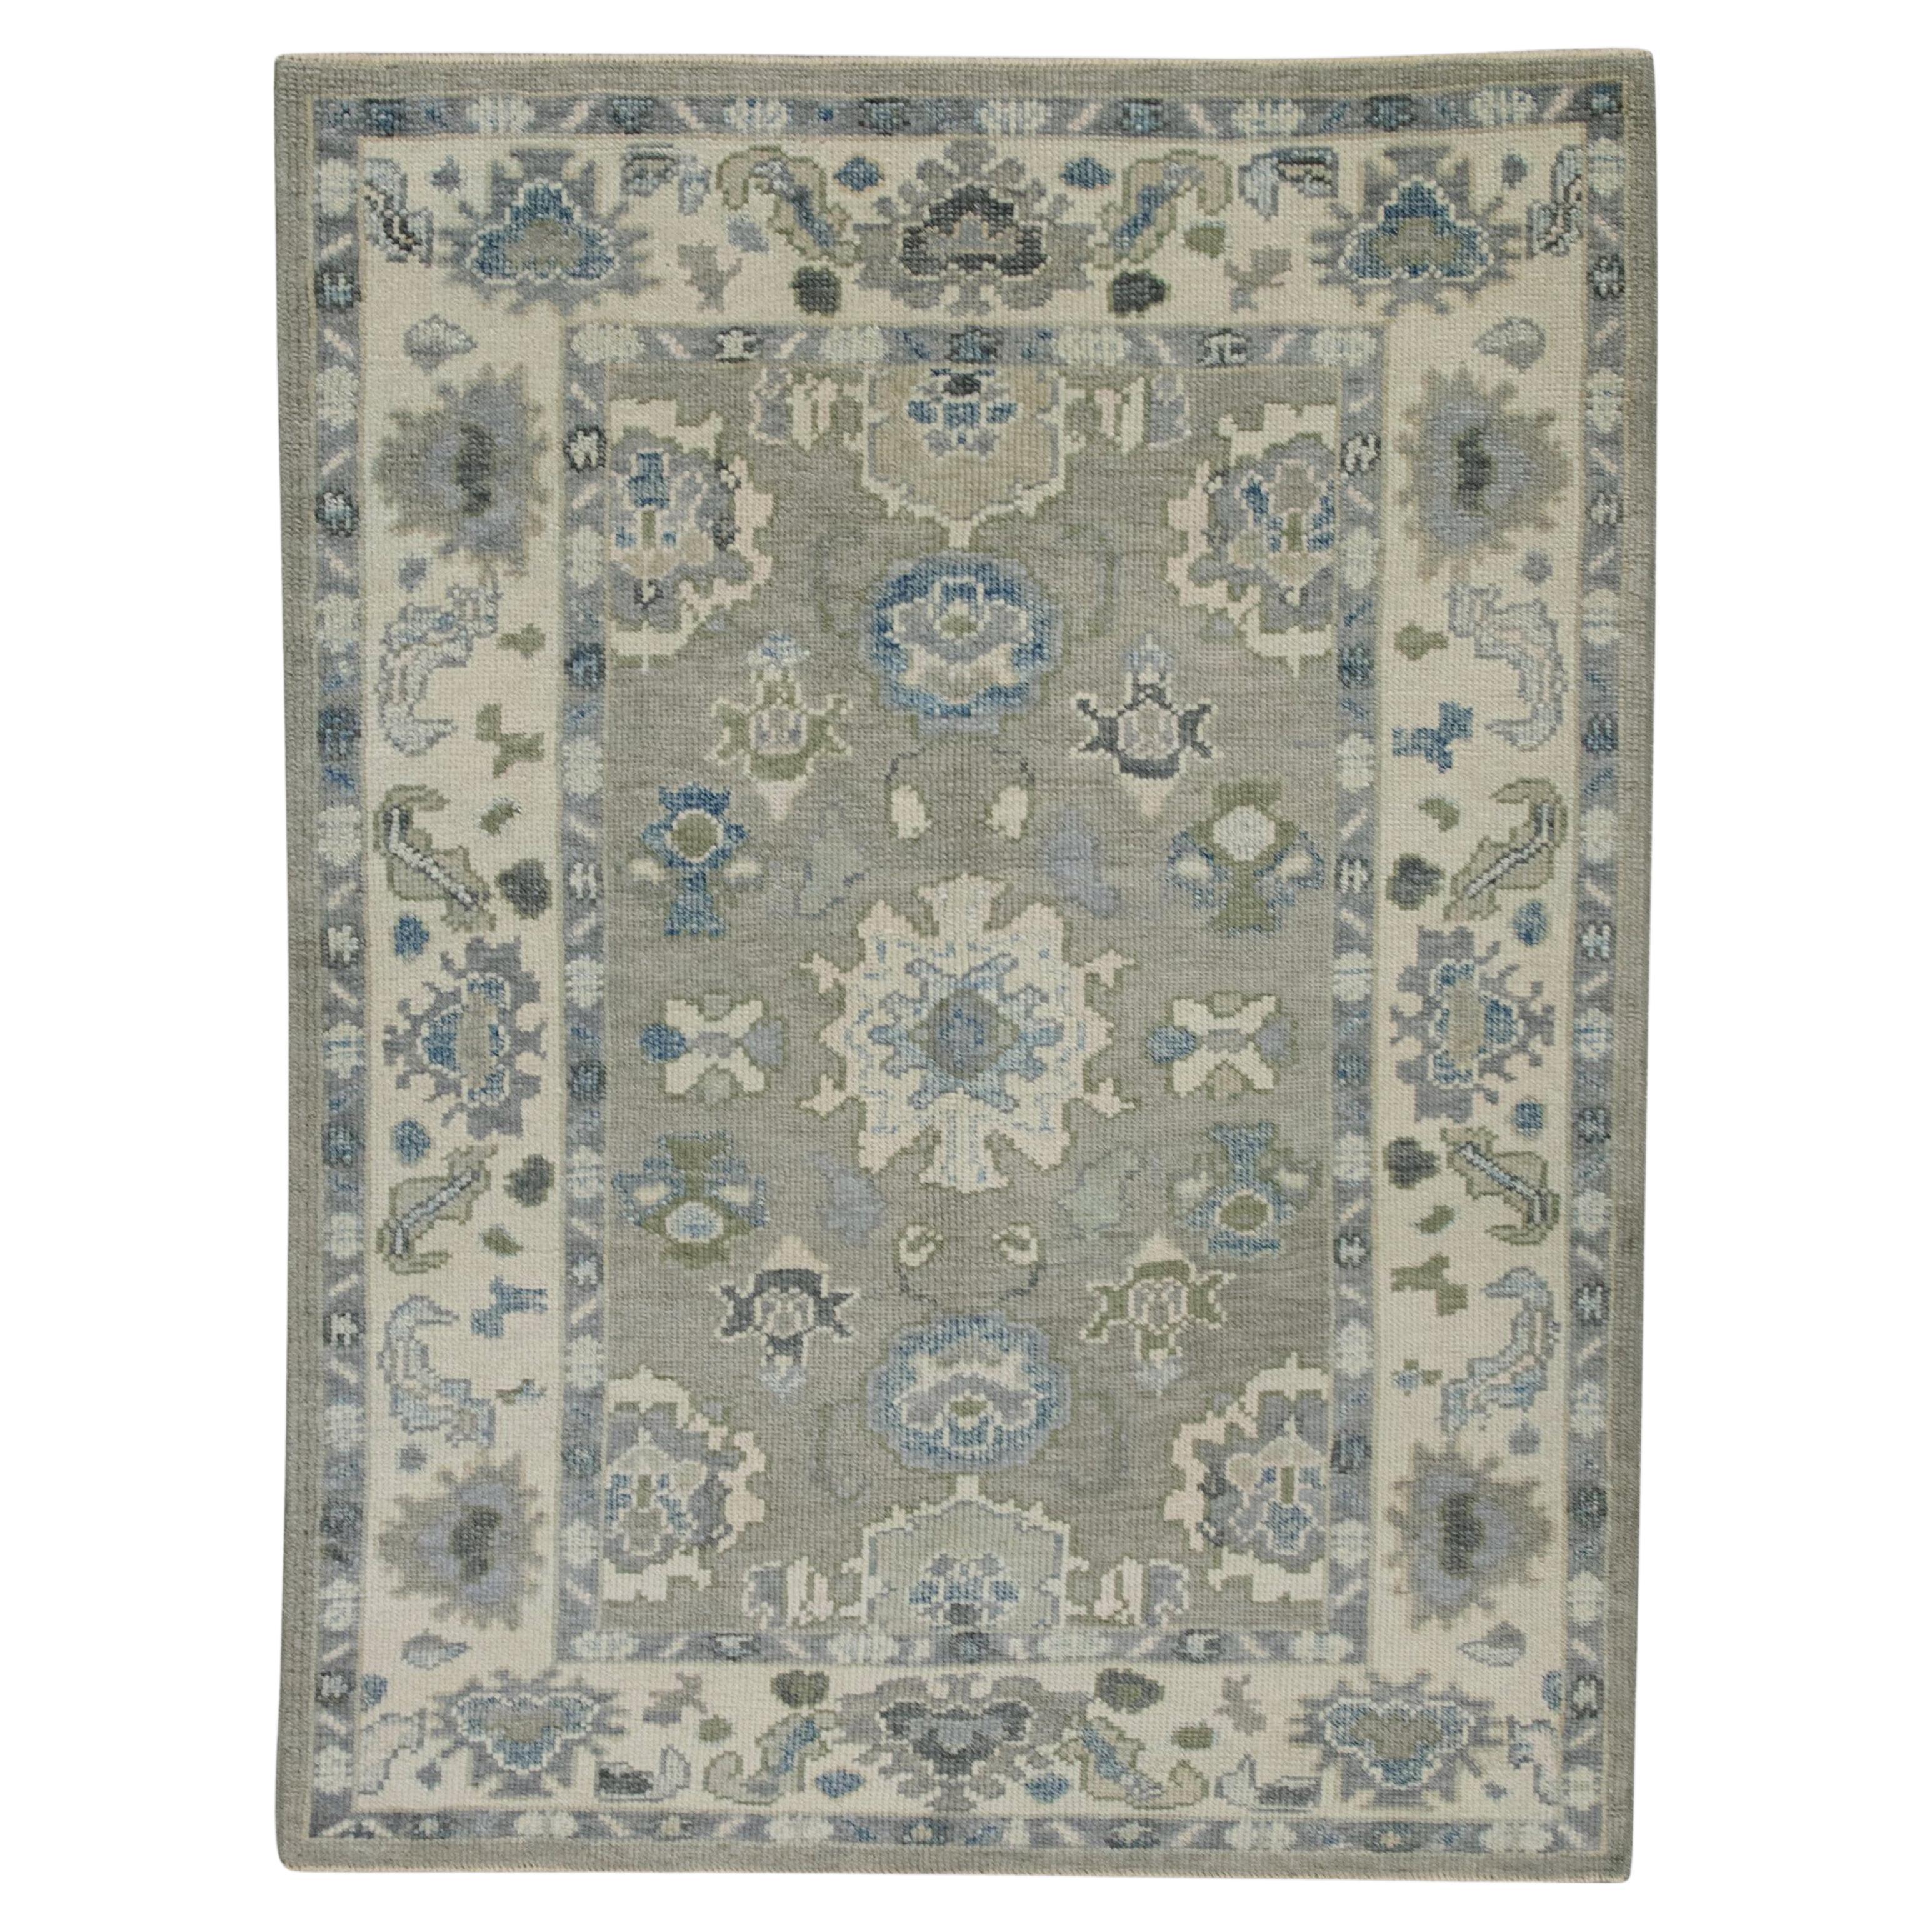 Handgewebter türkischer Oushak-Teppich aus Wolle in Grau & Blau mit Blumenmuster, 4' x 5'8"